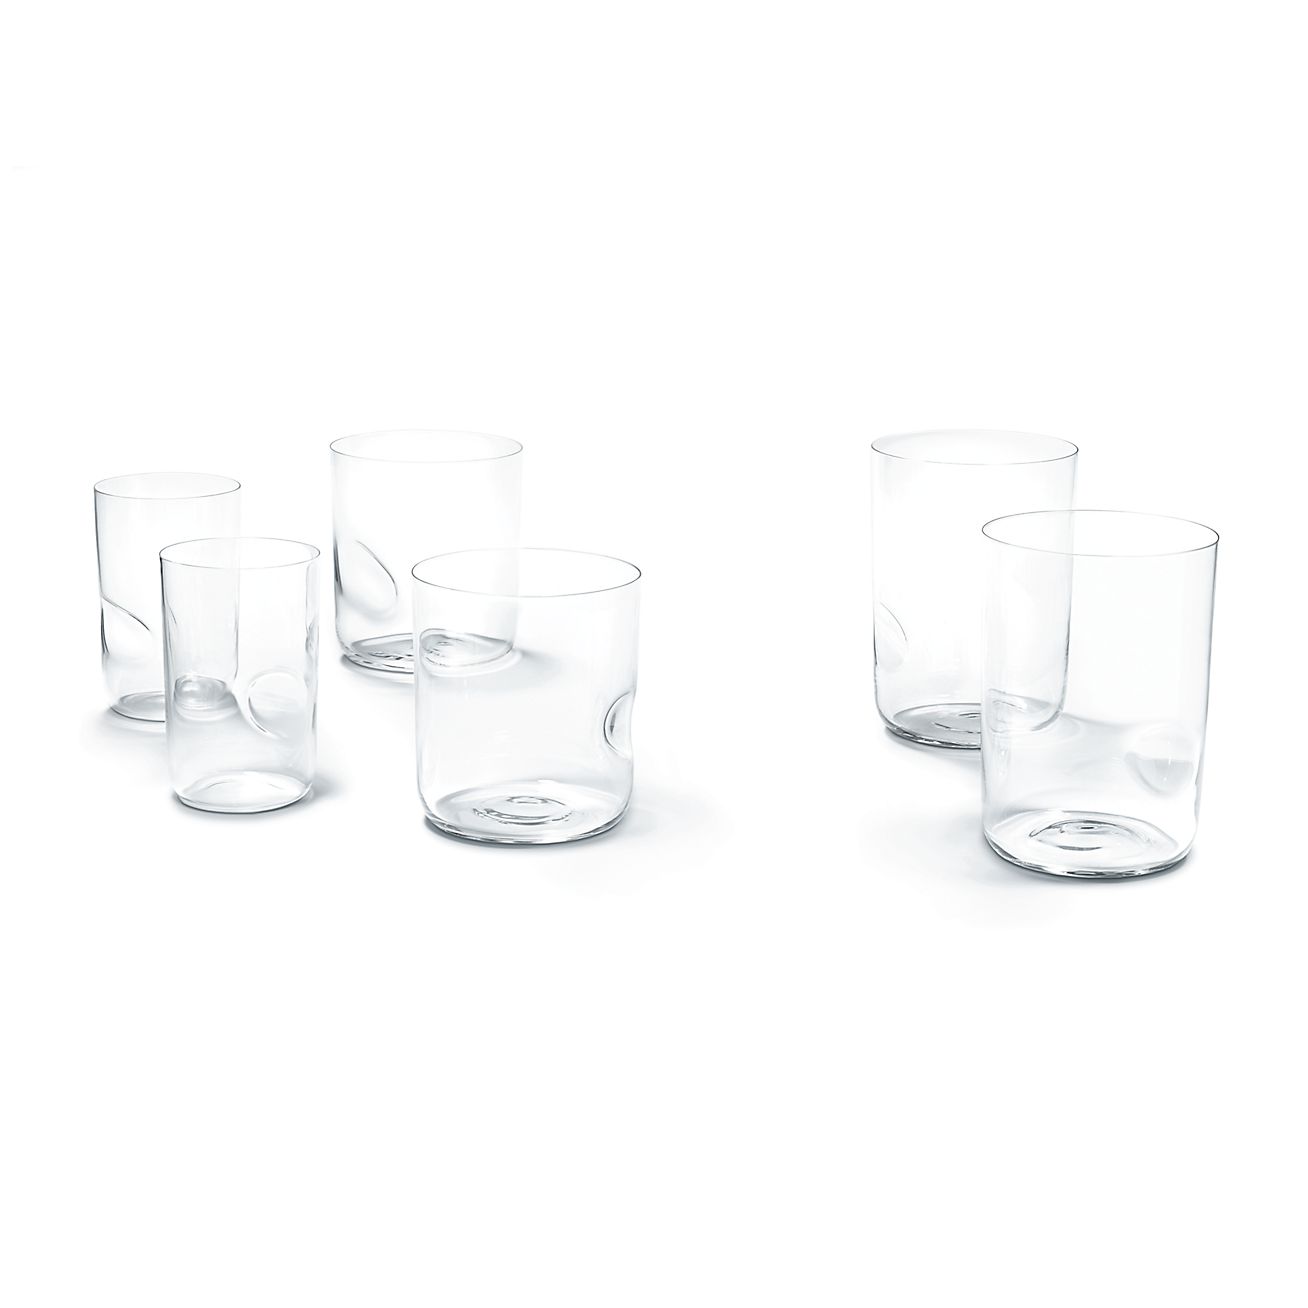 エルサ・ペレッティ™ サムプリント グラス リードクリスタル、2個